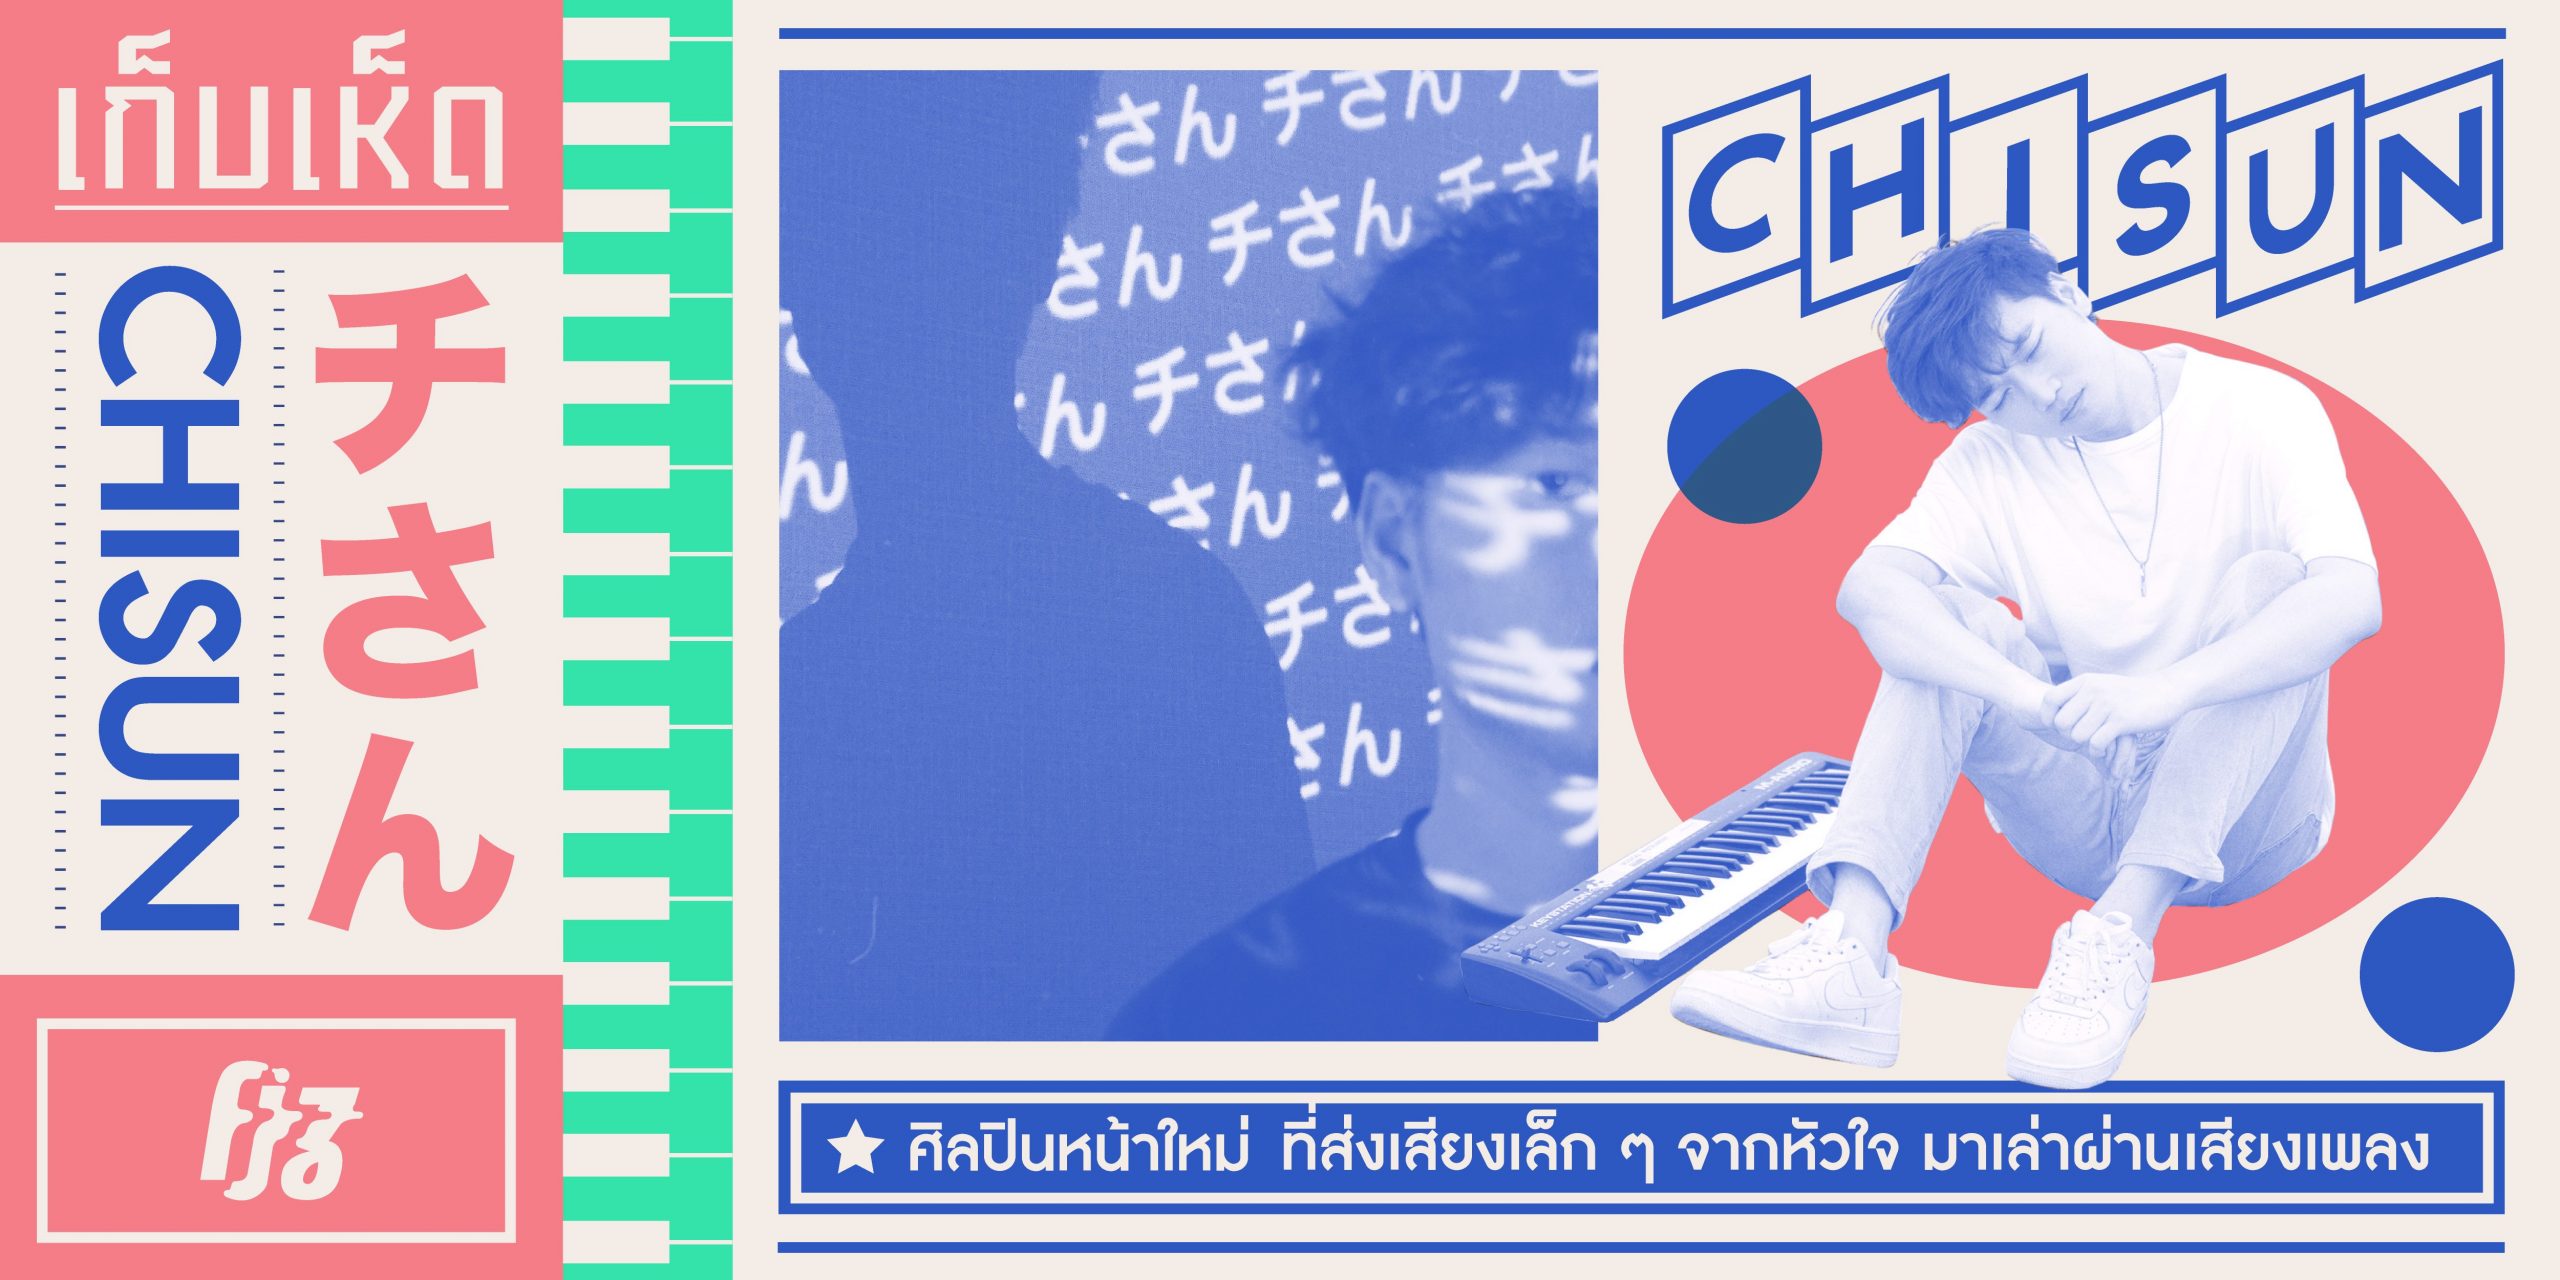 “Chisun” ศิลปินหน้าใหม่ ที่ส่งเสียงเล็ก ๆ จากหัวใจ มาเล่าผ่านเสียงเพลง